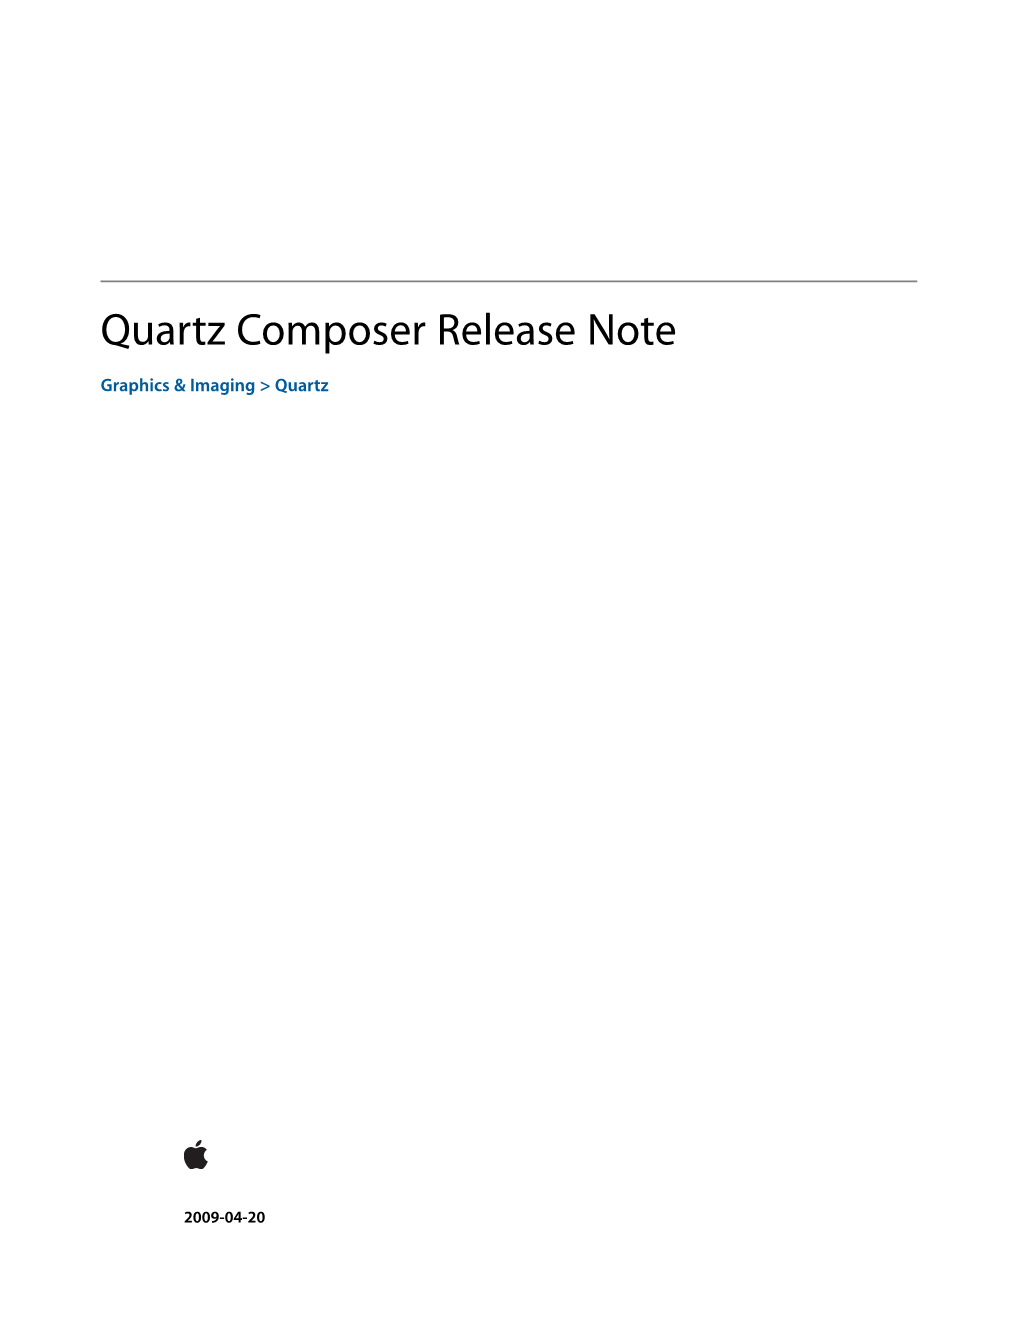 Quartz Composer Release Notes for Mac OS X V10.6 5